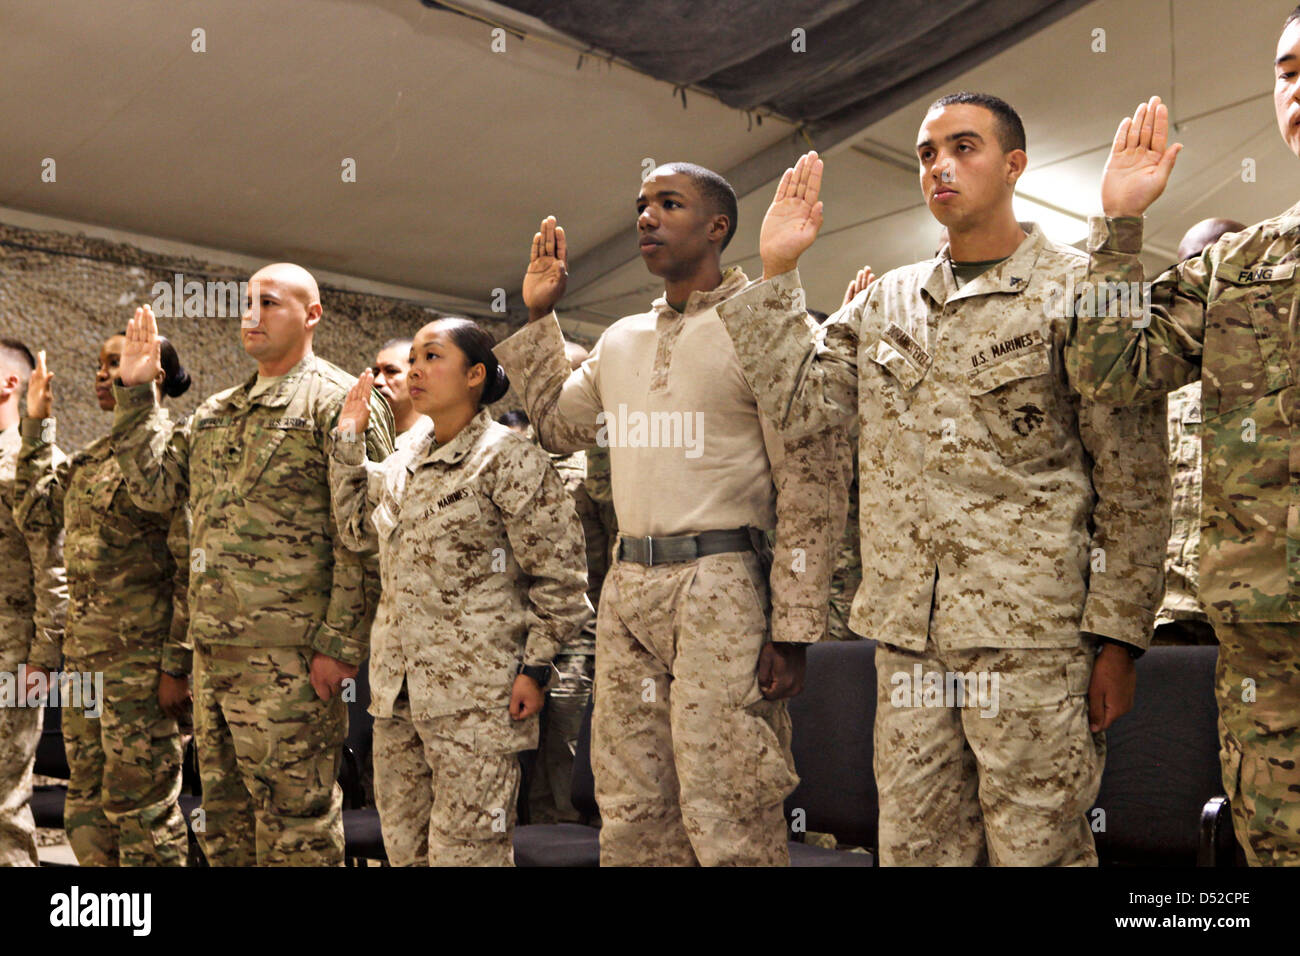 US Marines Eid der Staatsbürgerschaft der Vereinigten Staaten während einer Einbürgerung Zeremonie 1. März 2013 in Kandahar Flugplatz, Afghanistan. Stockfoto